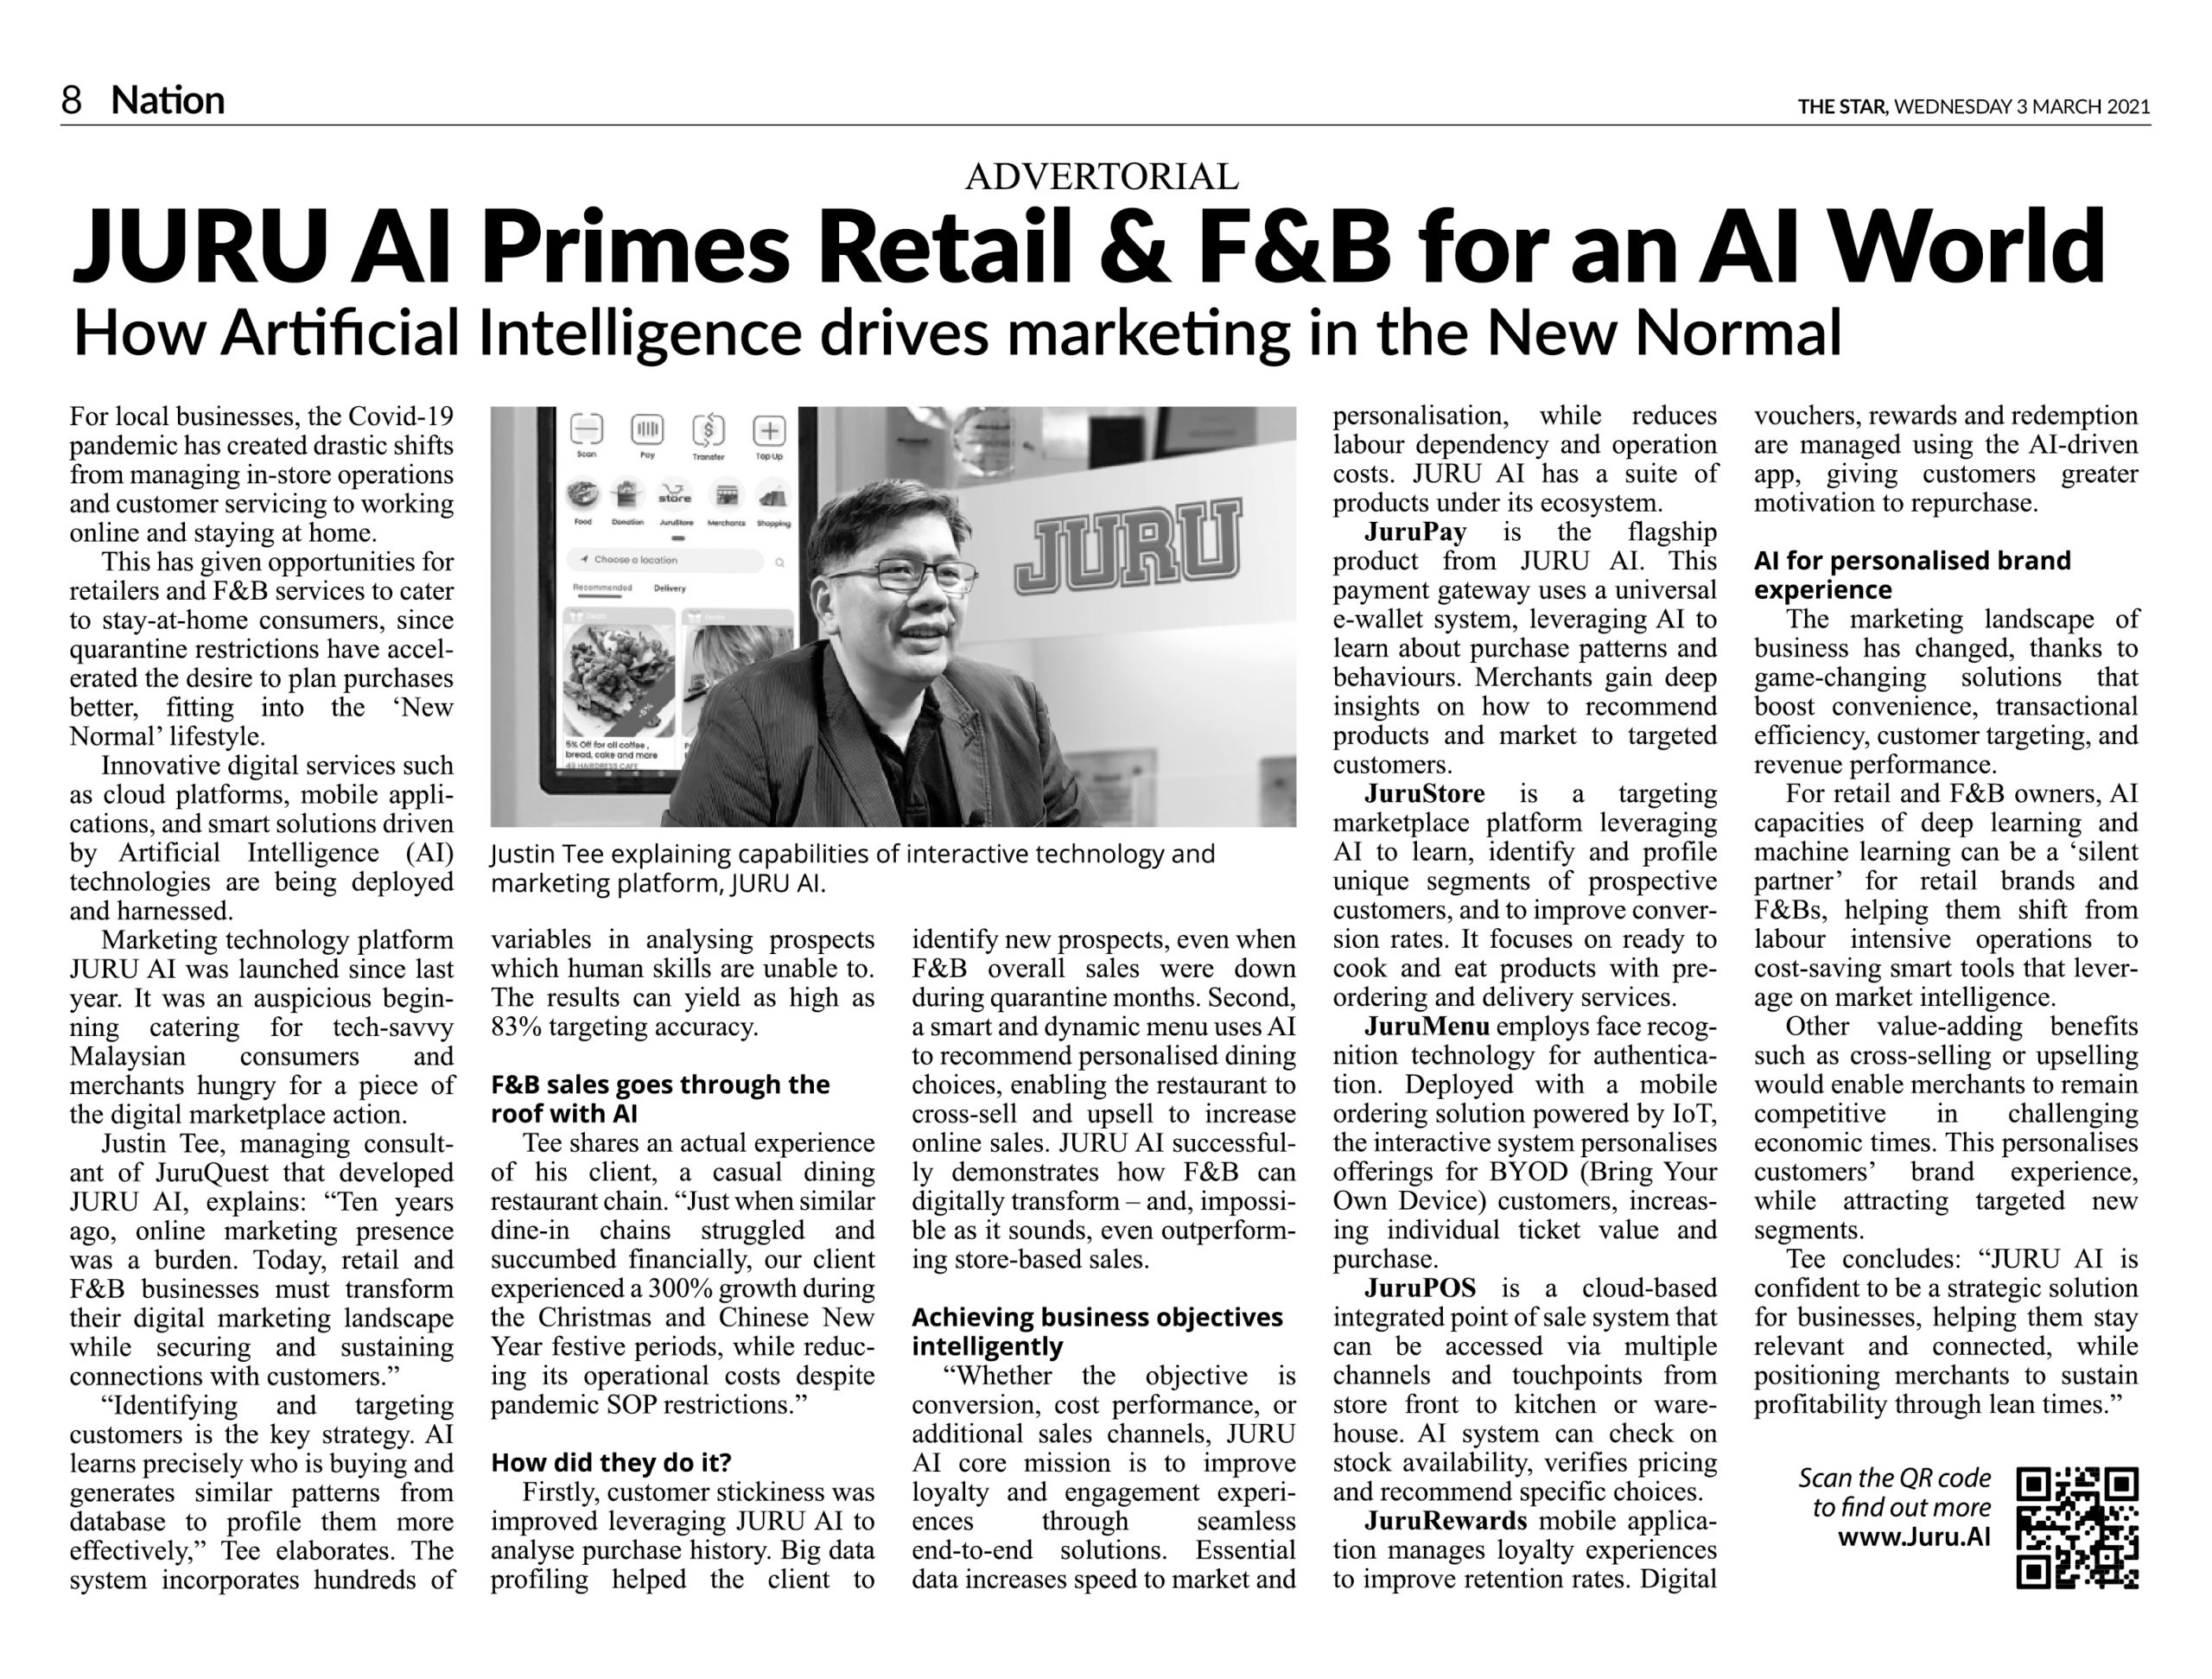 JURU AI Primes Retail & F&B for an AI World